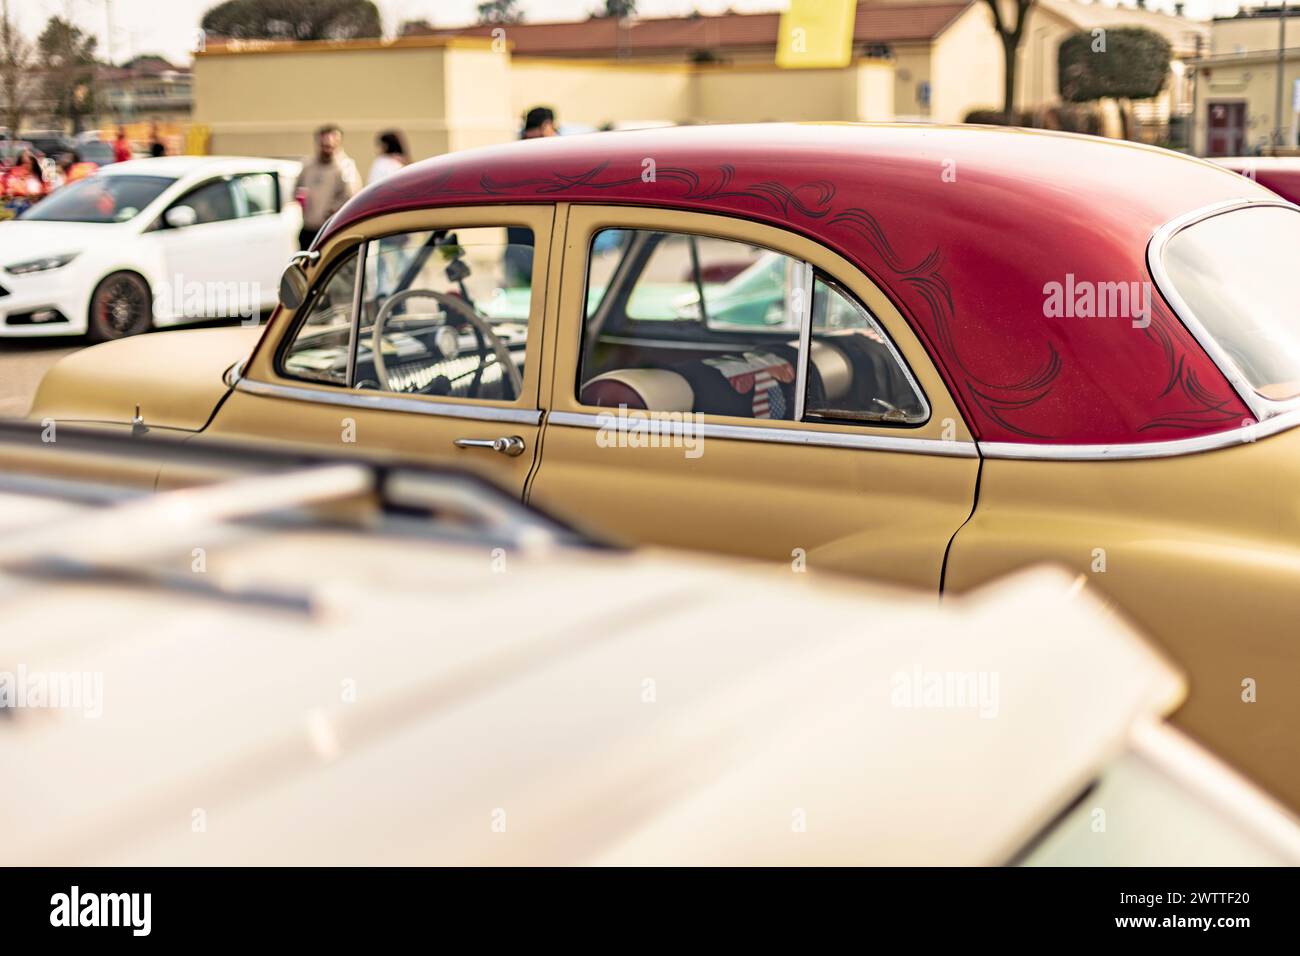 Exposé voiture américaine vintage lors d'un salon, capturant l'essence de l'excellence automobile classique. Banque D'Images